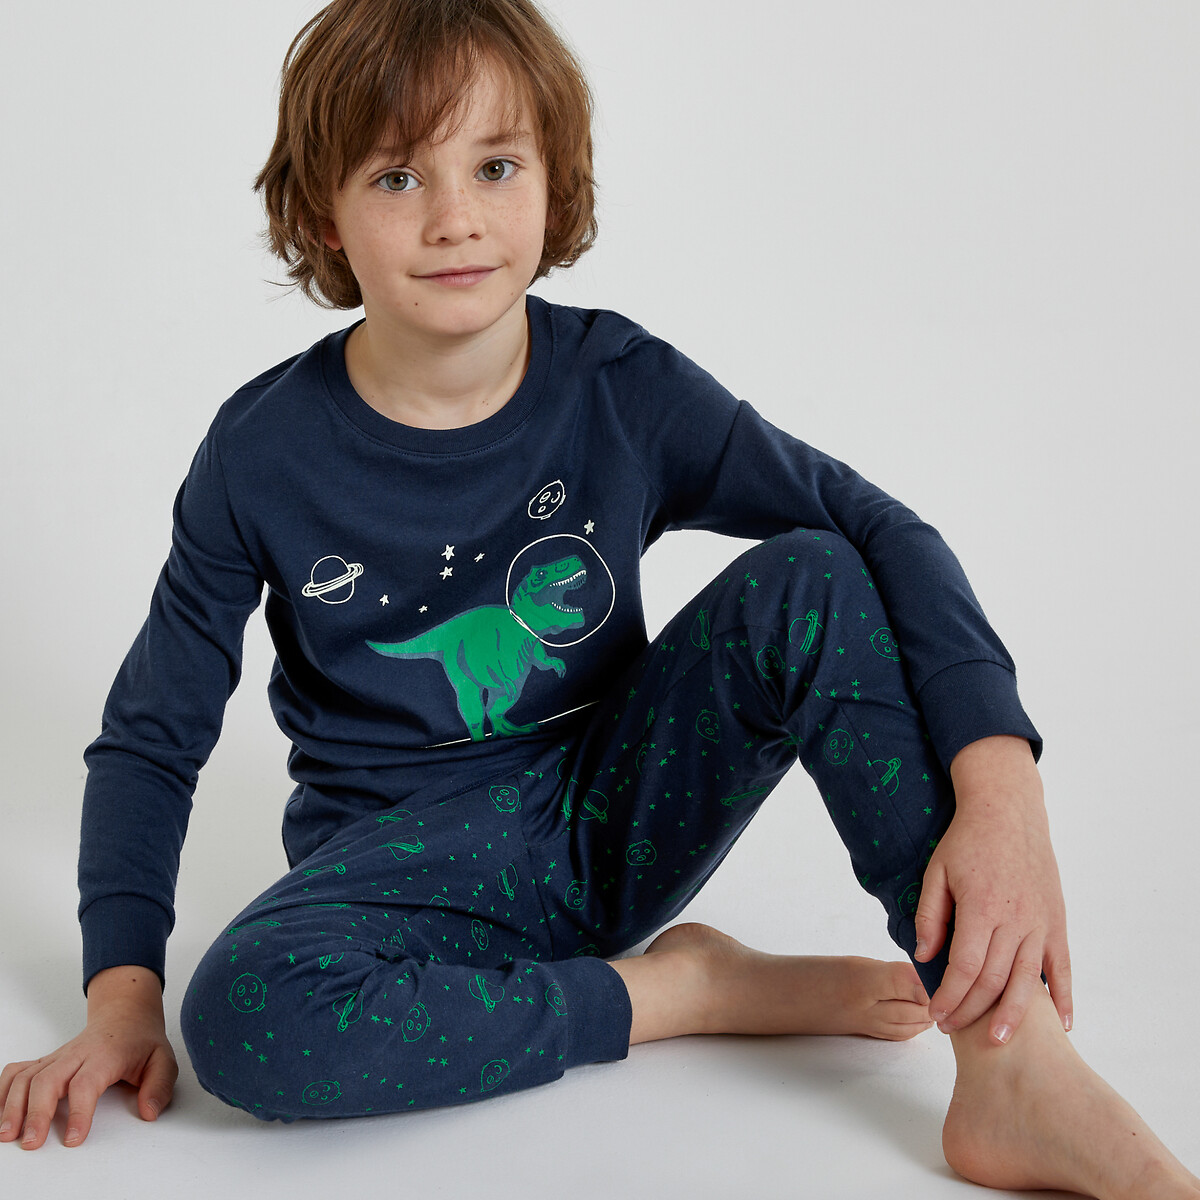 Cotton Jersey Pyjamas with Glow in the Dark Dinosaur Print